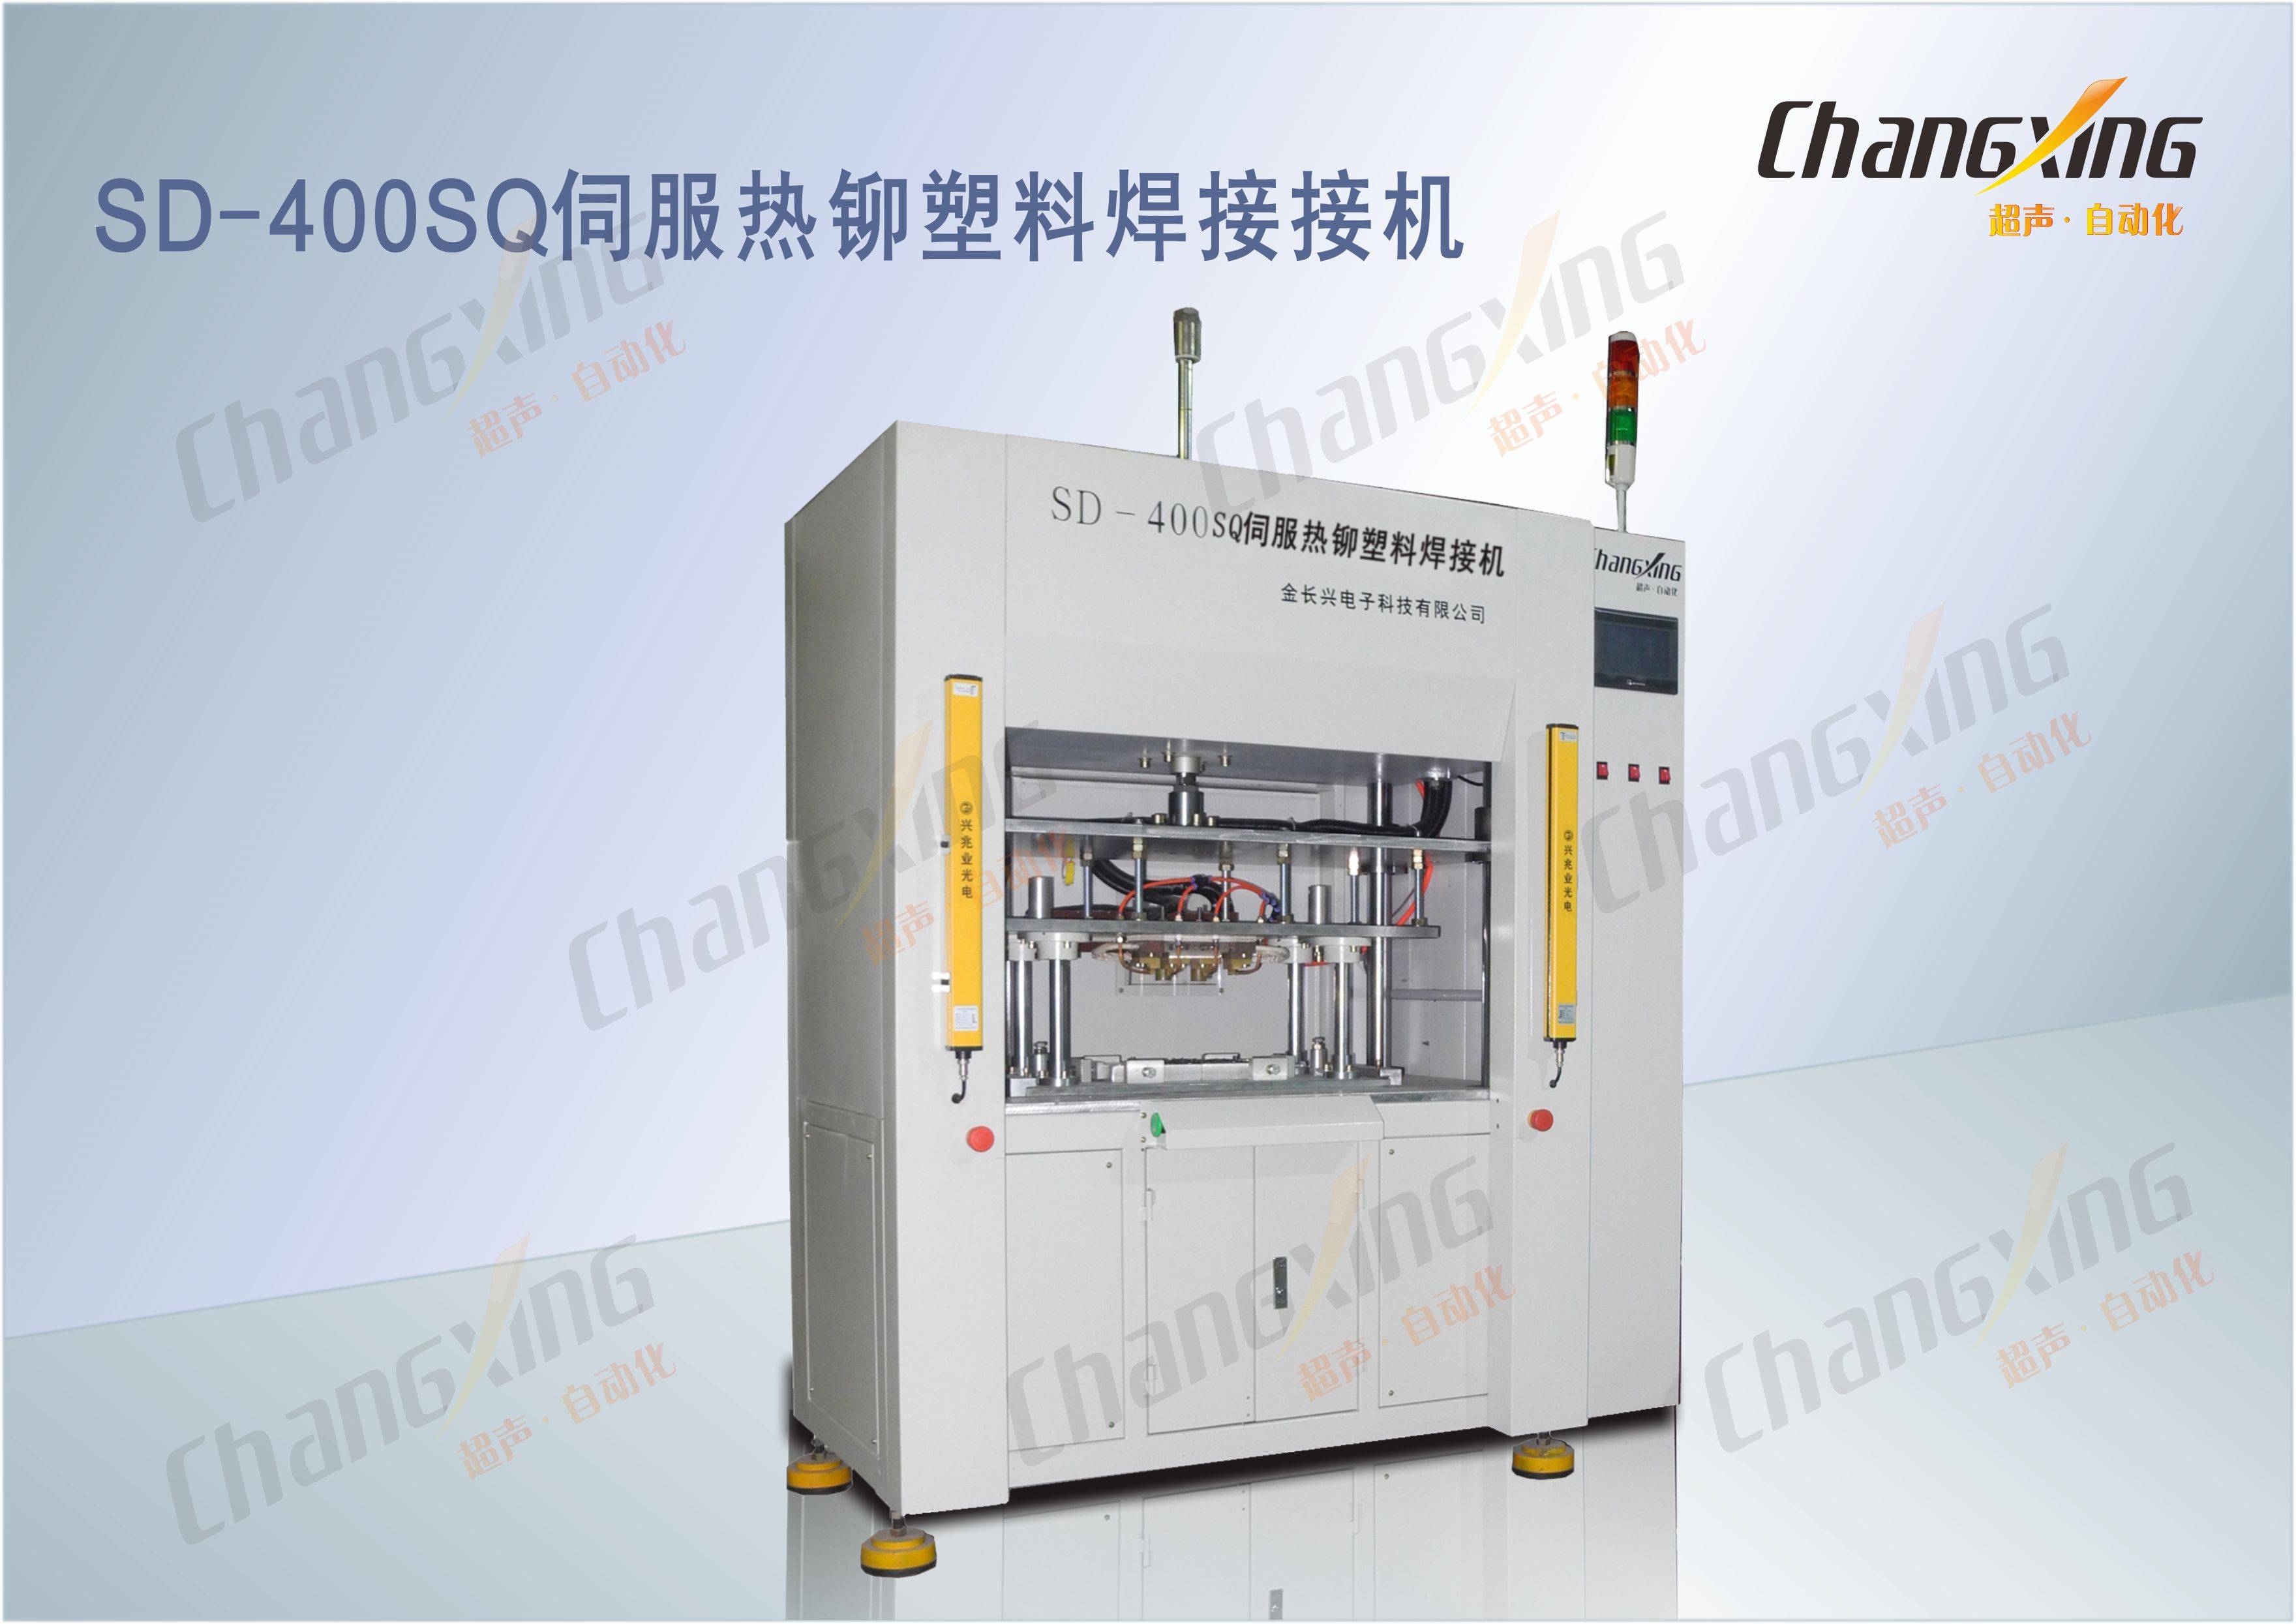 SD-400SQ伺服热铆塑料焊接接机1(1)